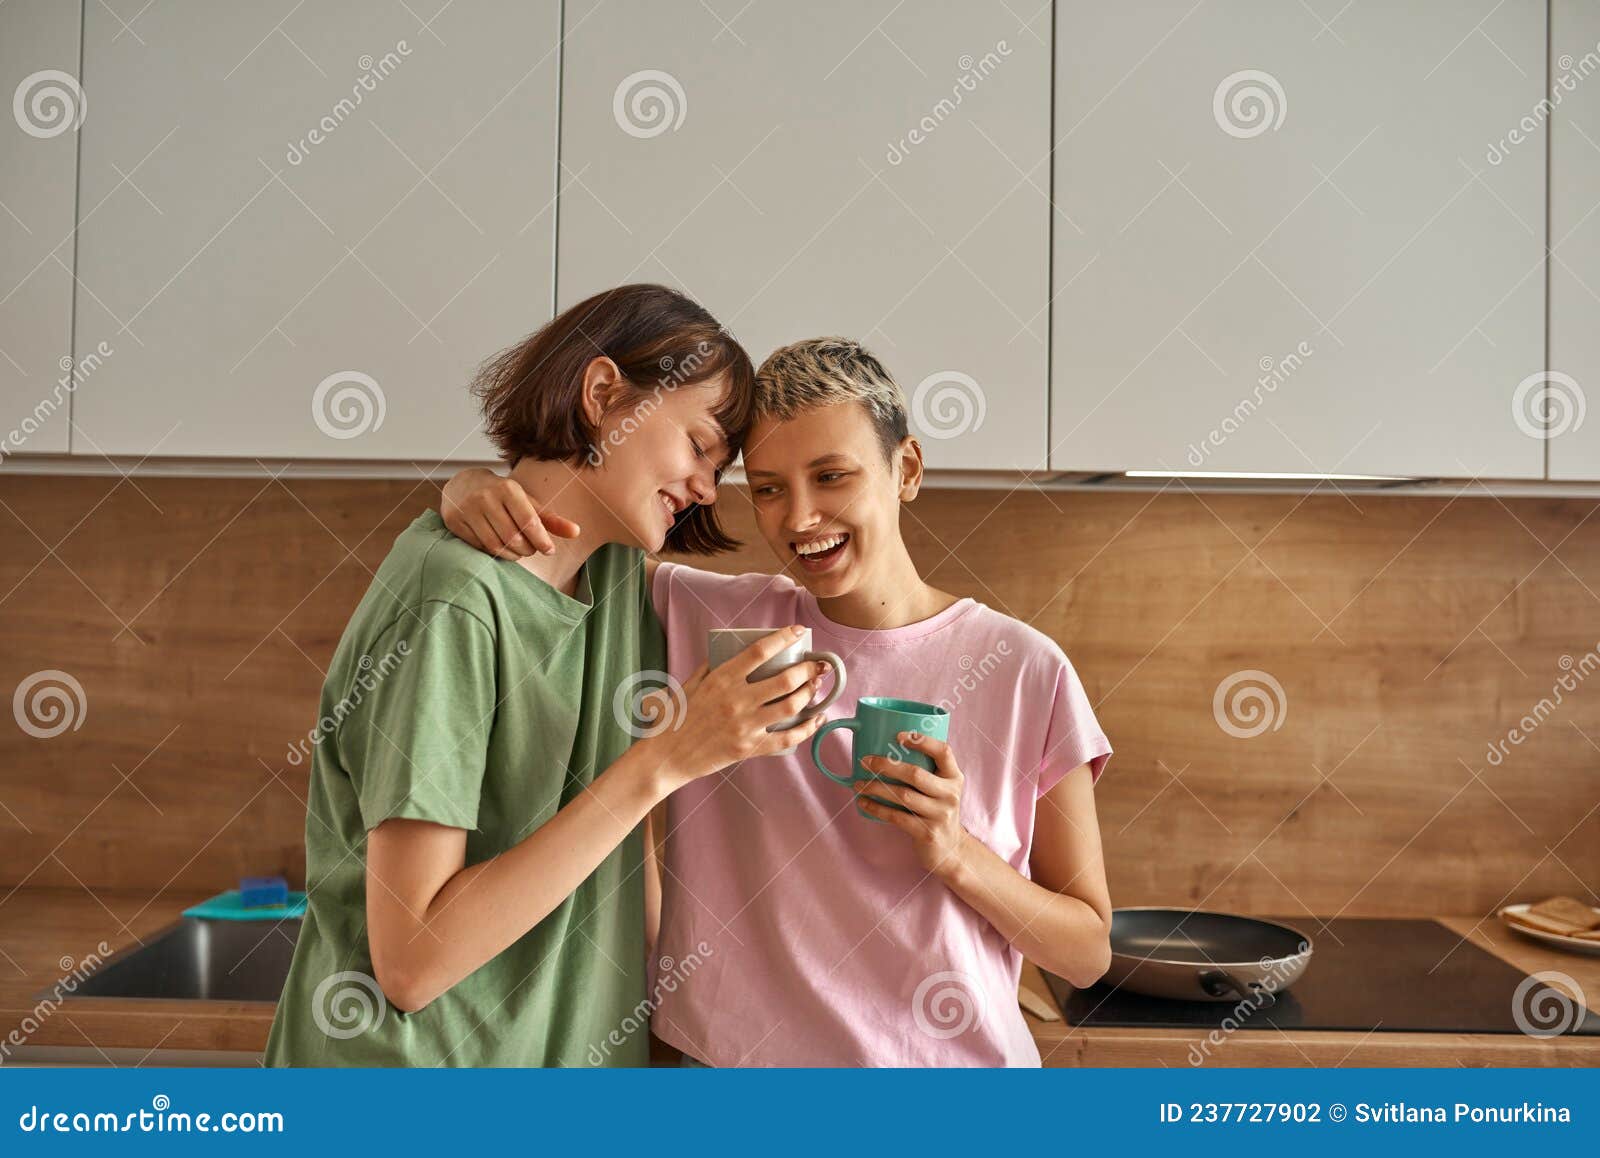 Две подруги-лесбиянки пьют кофе на кухне. концепция друзей | Премиум Фото